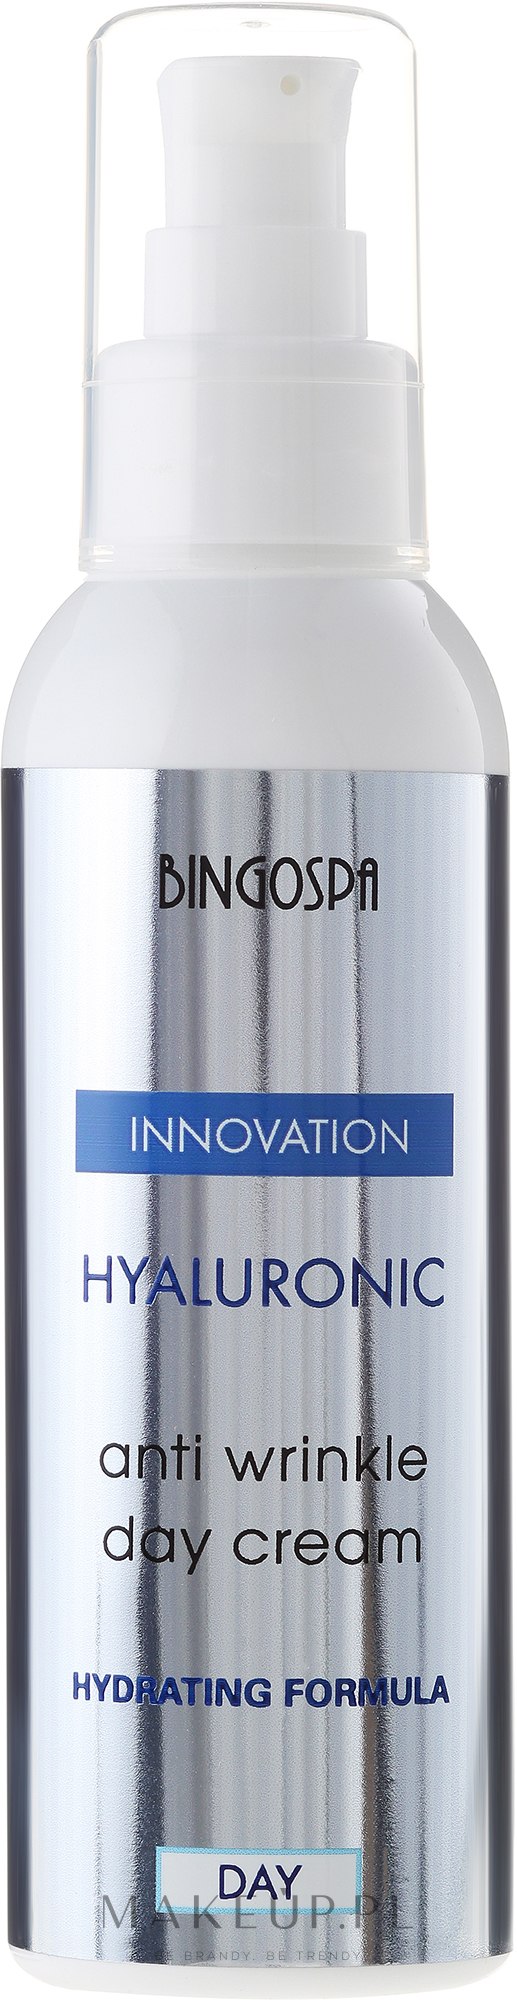 Hialuronowy krem przeciwzmarszczkowy do twarzy na dzień - BingoSpa Hyaluronic Anti Wrinkle Day Cream — Zdjęcie 135 g